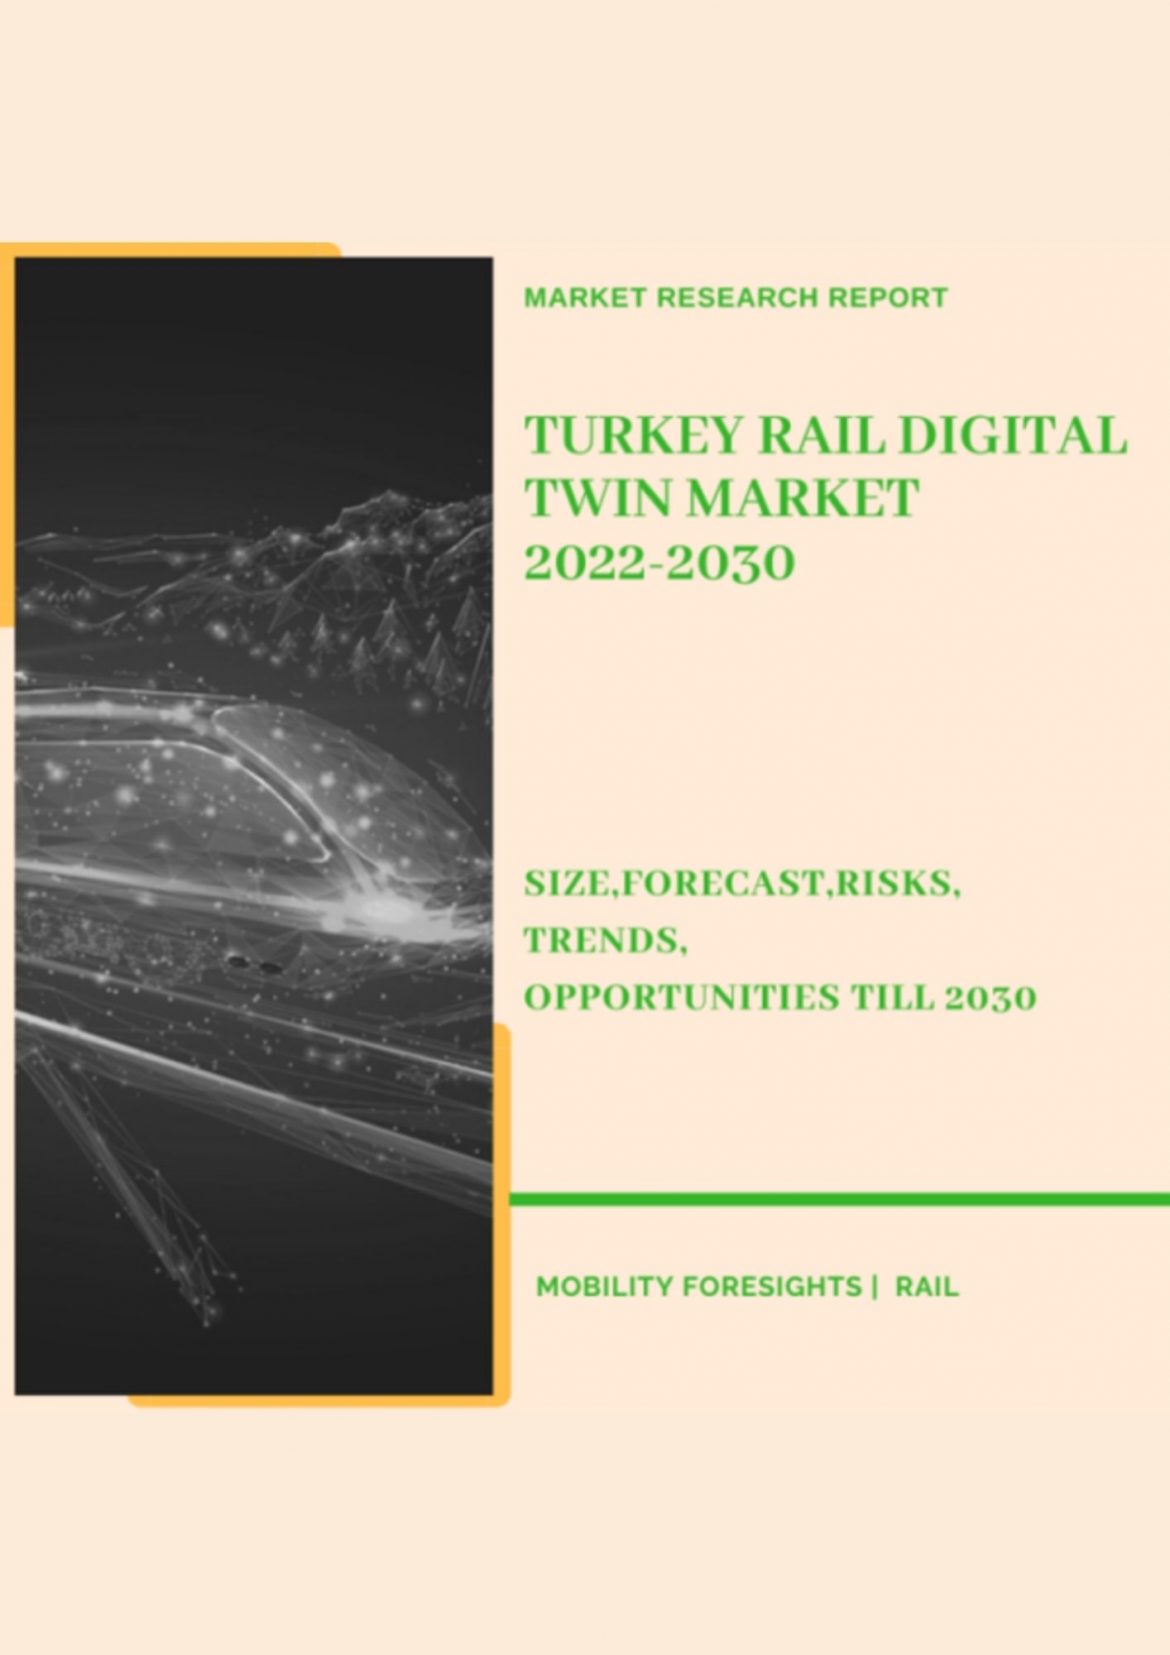 Turkey Rail Digital Twin Market 2022-2030